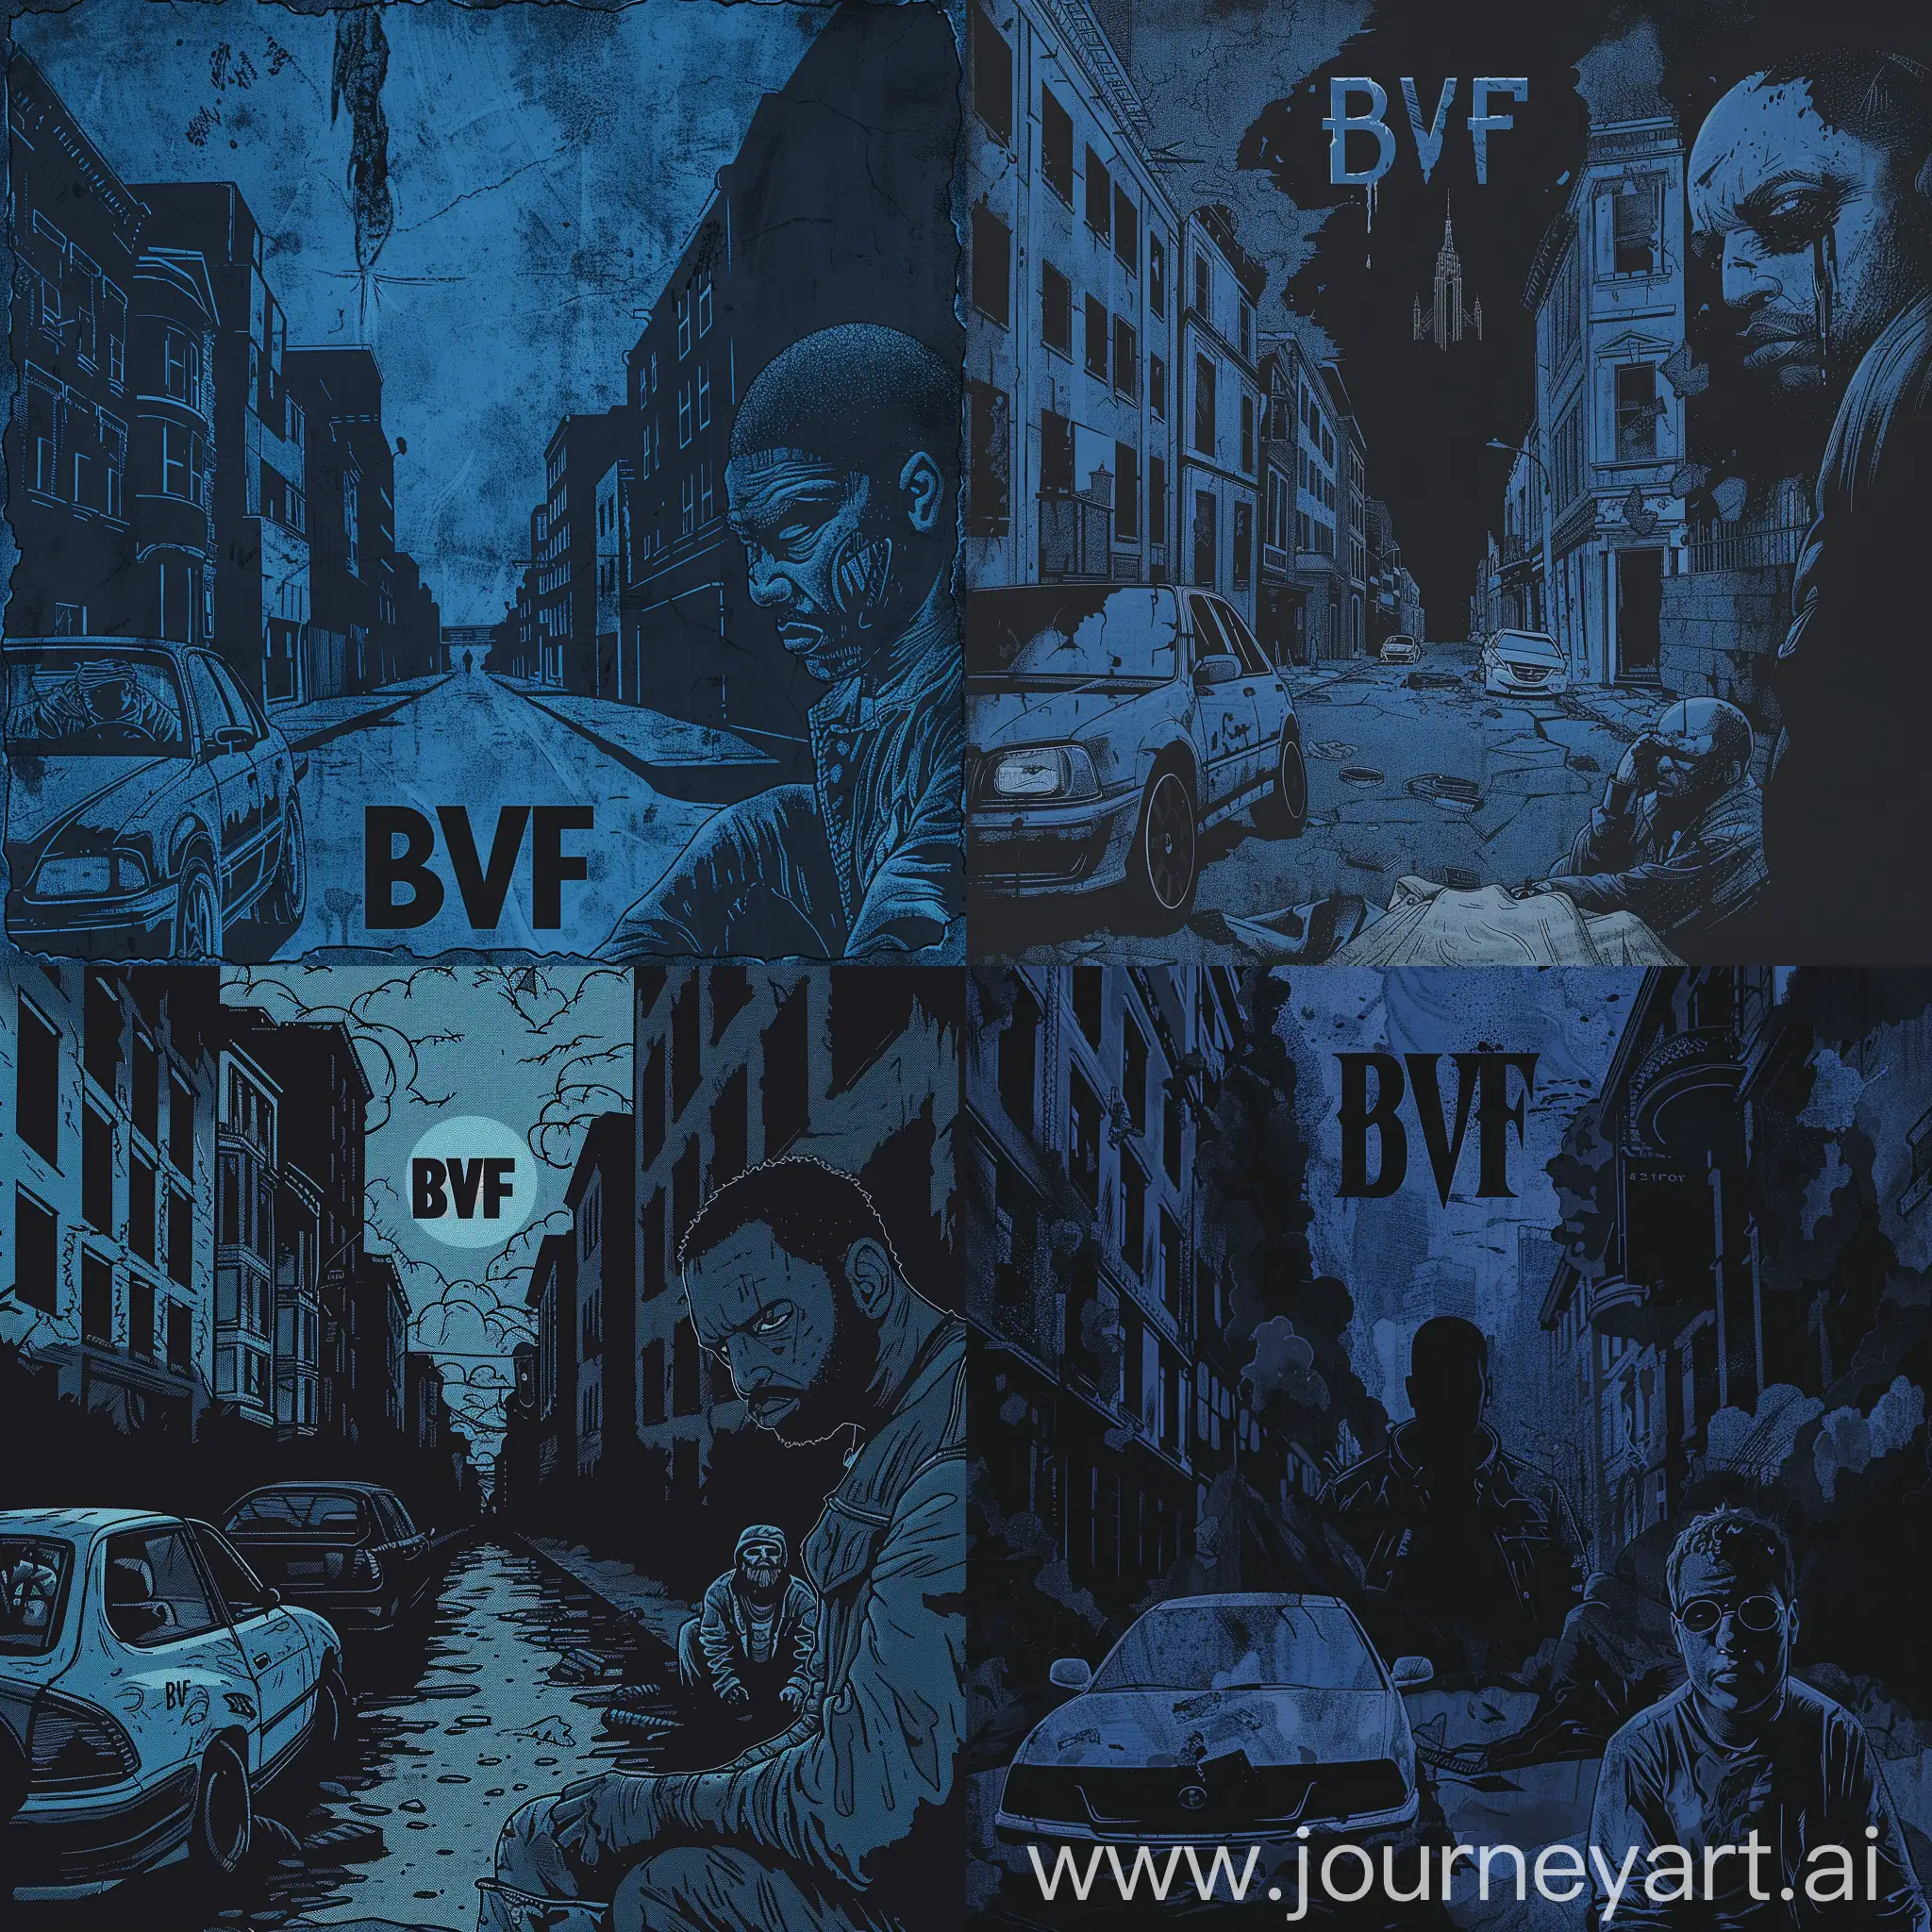 Обложка для реп альбом в стиле готики с преобладающим цветов темно синим без зданий с надписью BVF машина слева справа бездомный мужчина у которого не видно лицо